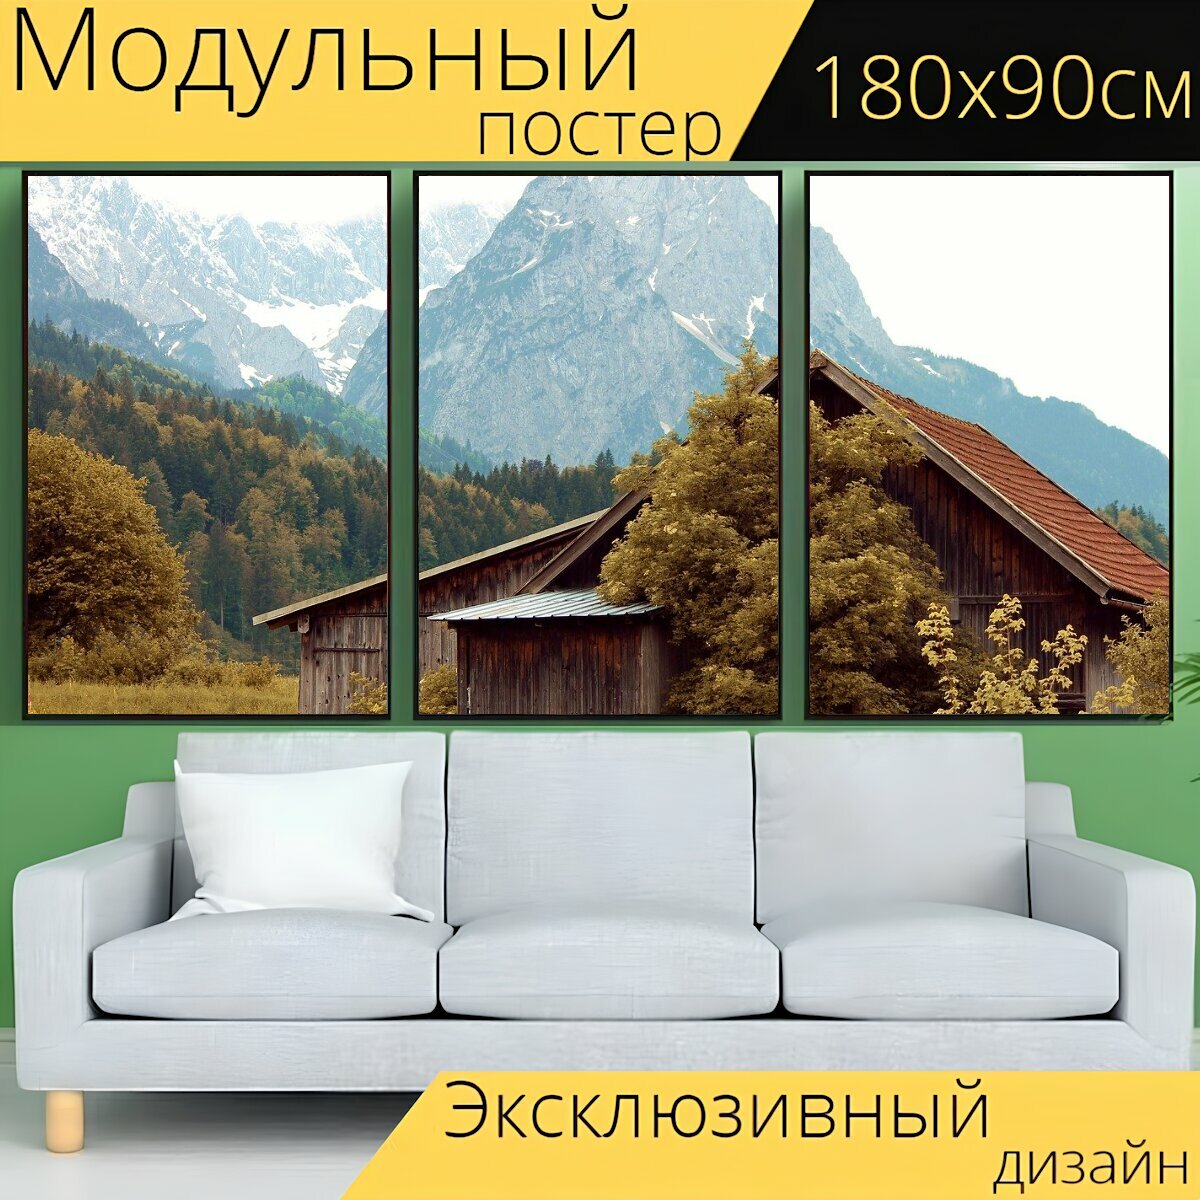 Модульный постер "Хижина, деревянная хижина, подкладка коттедж" 180 x 90 см. для интерьера